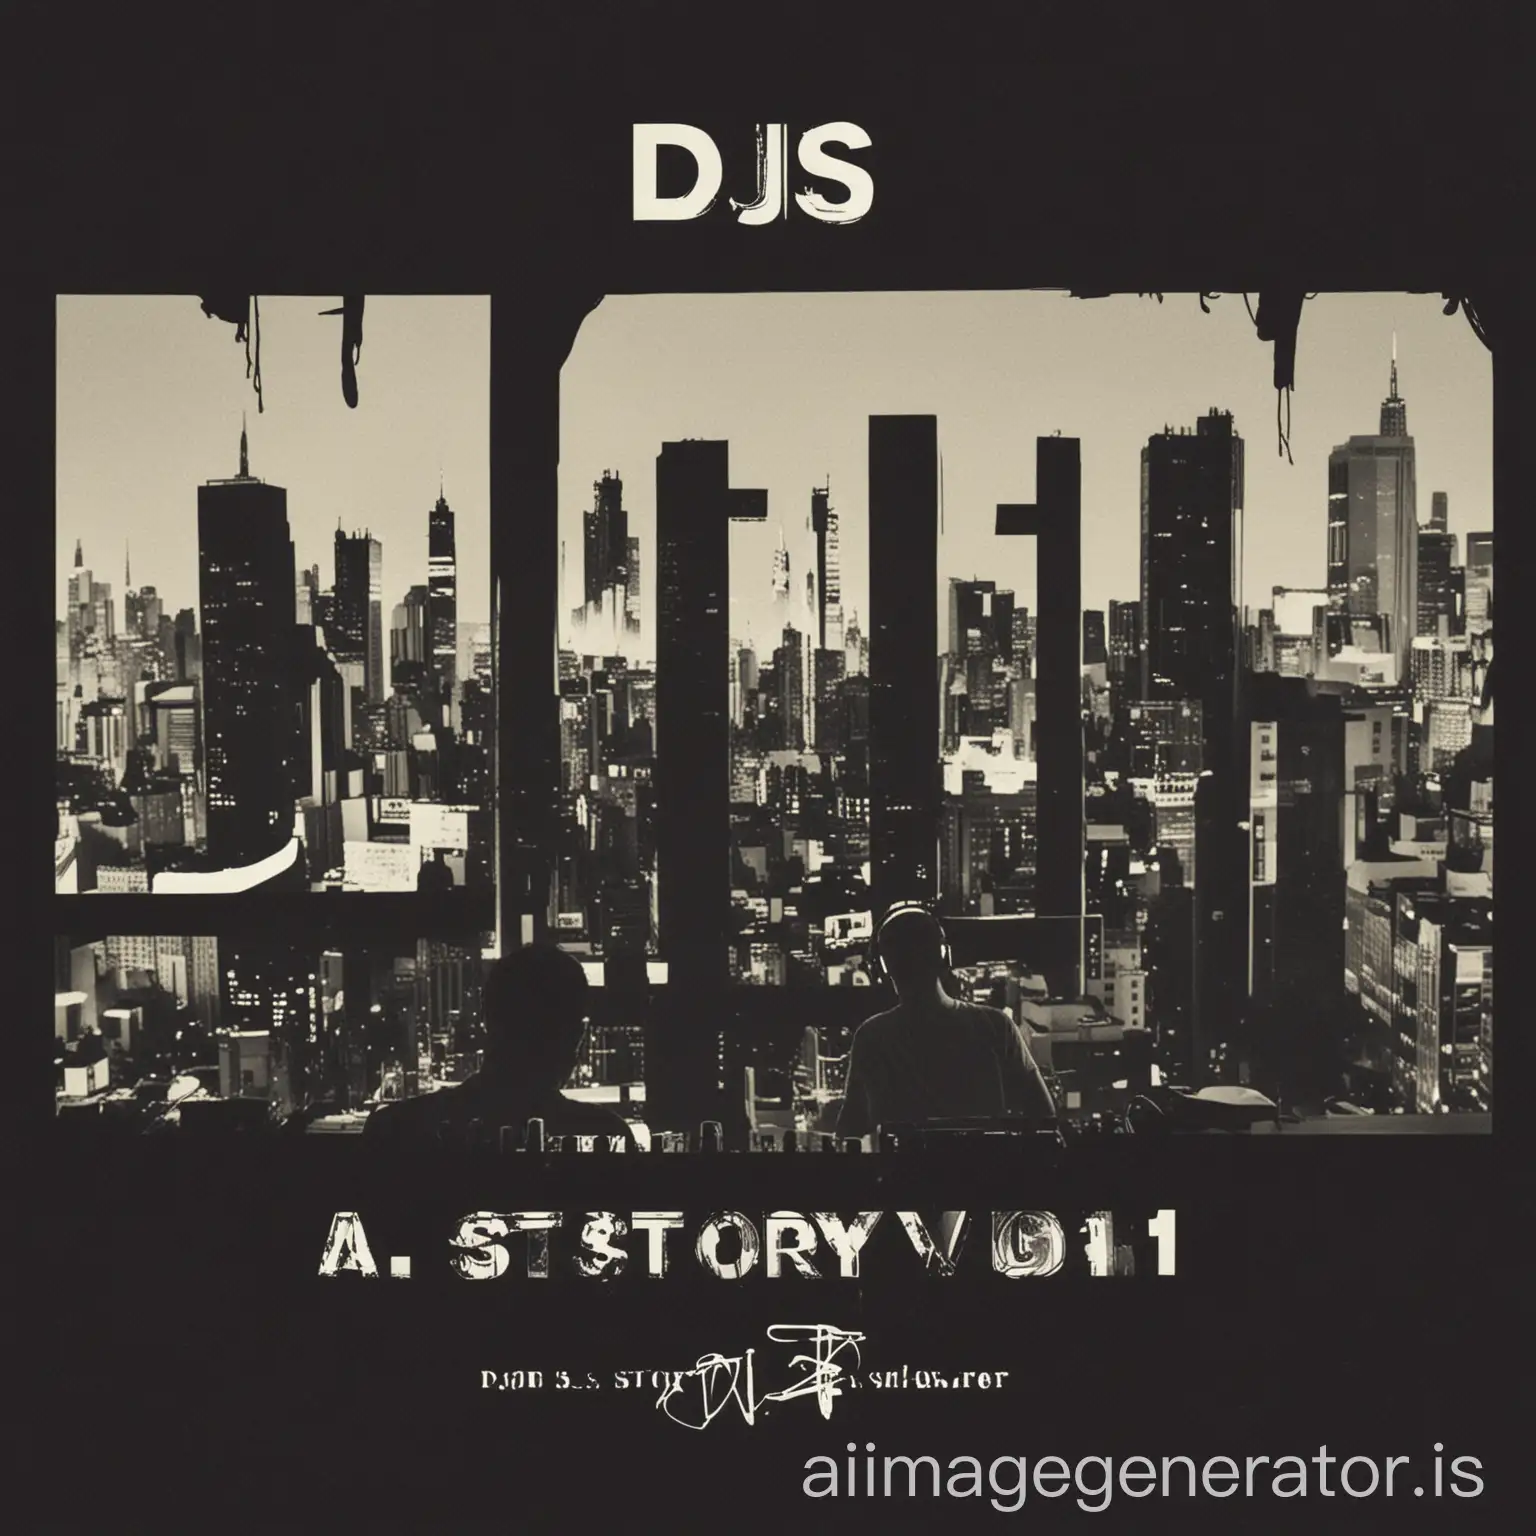 A DJs Story Vol. 1
